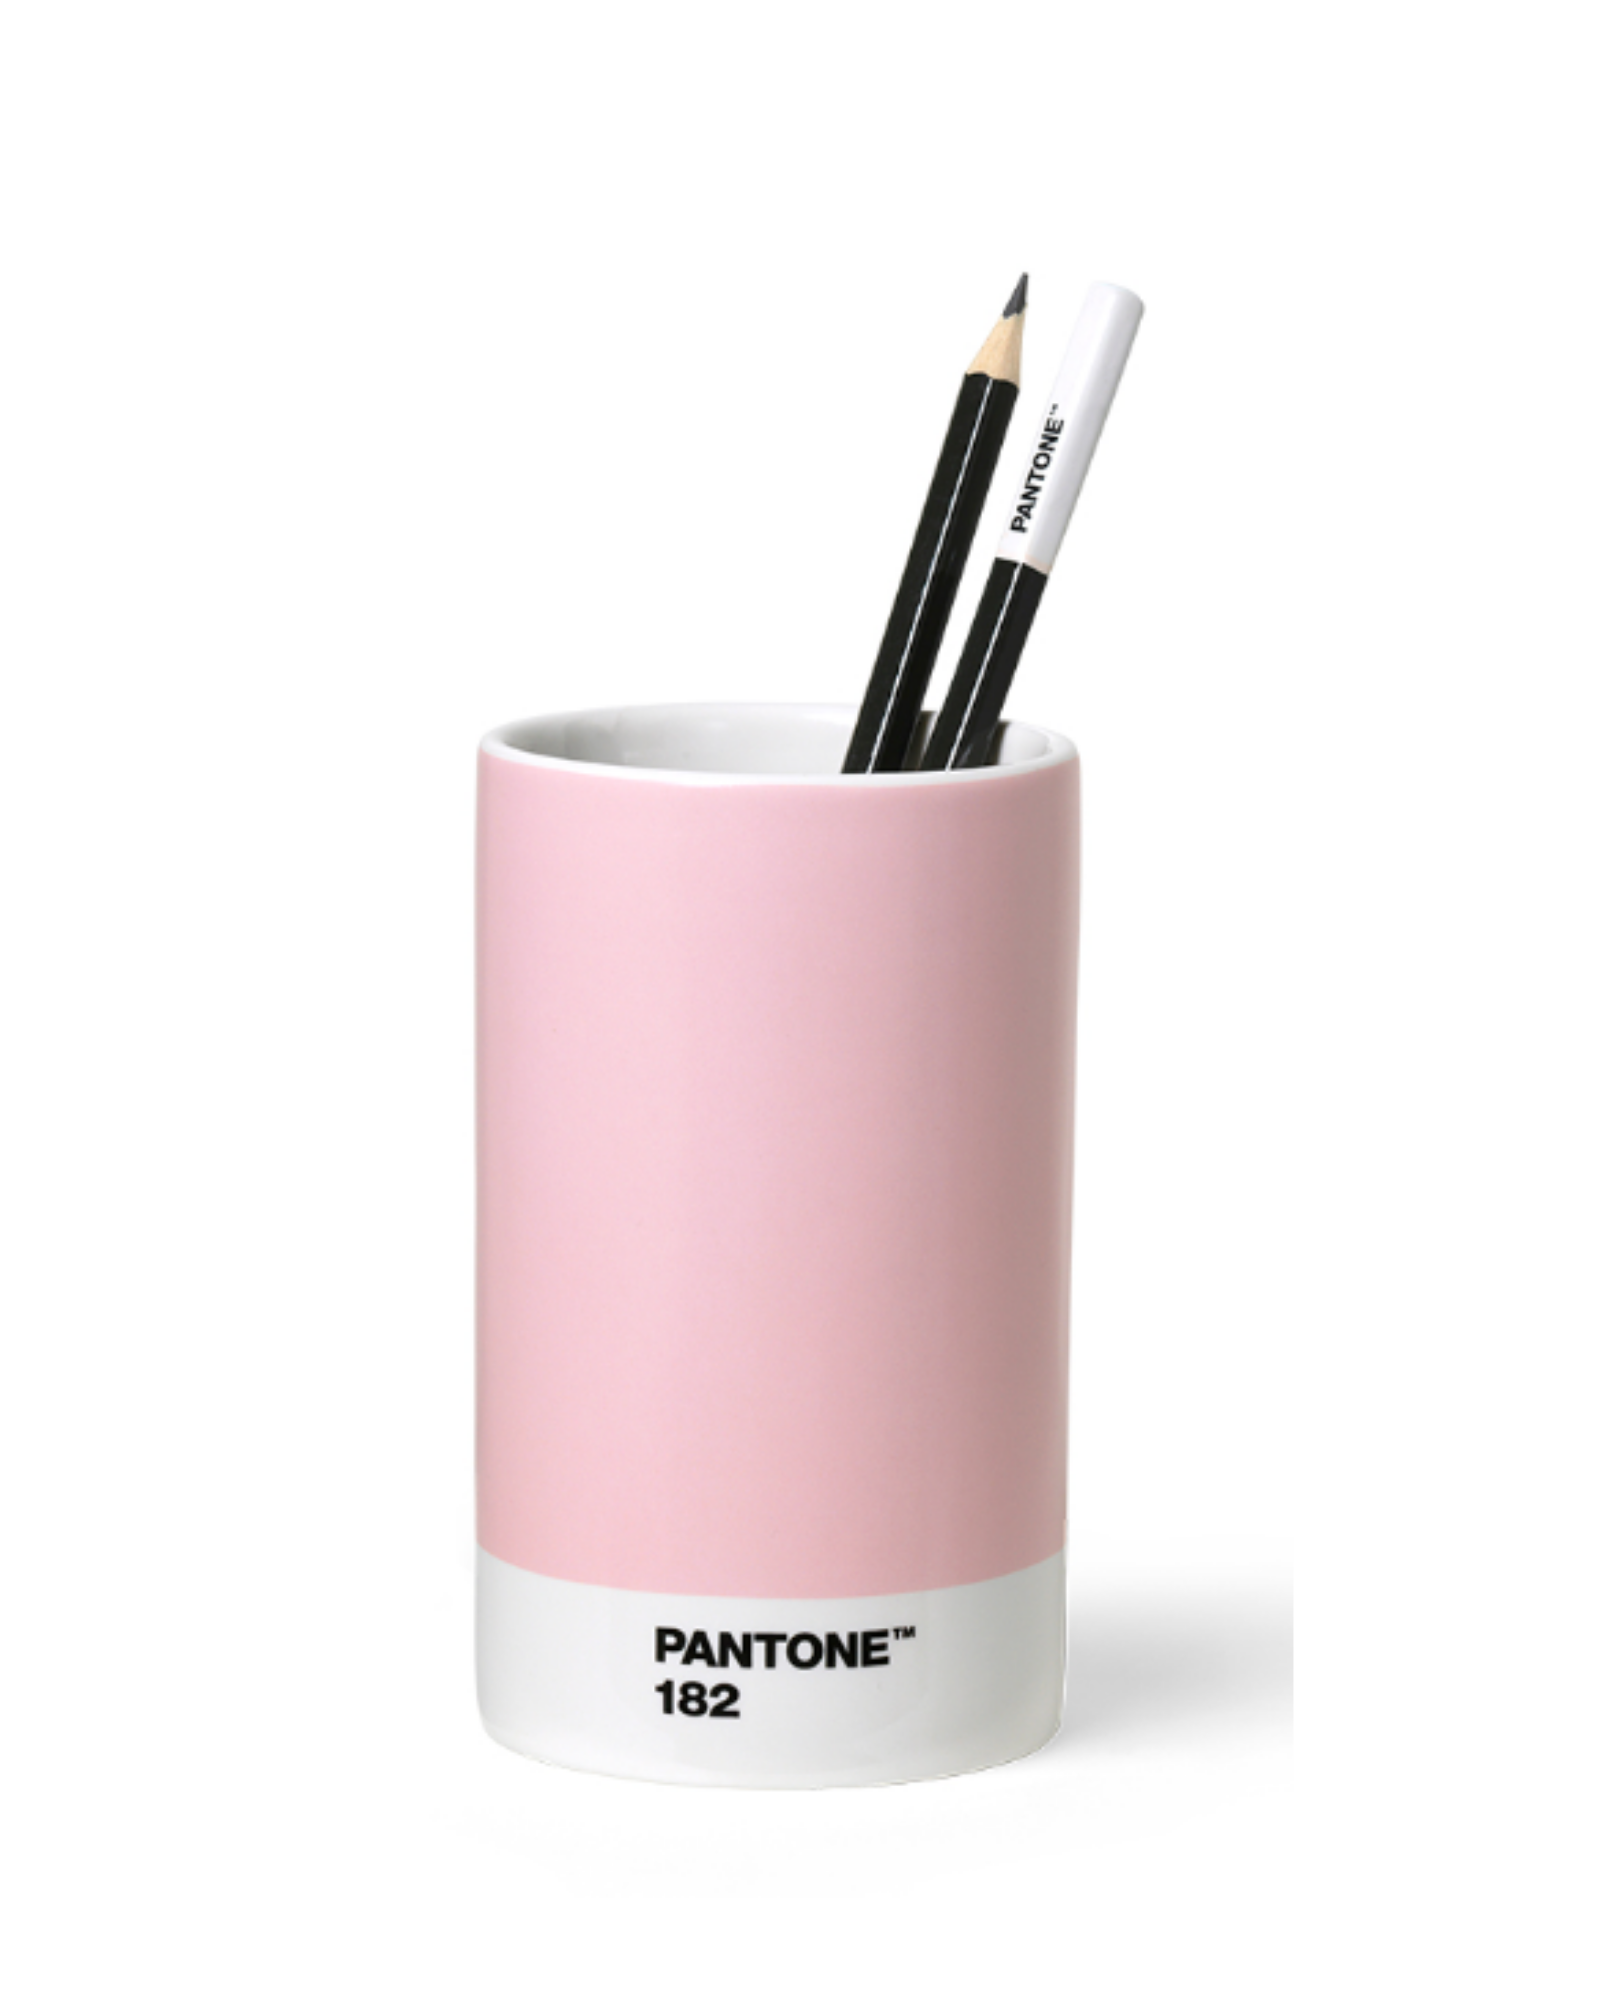  PANTONE PENCIL CUP - LIGHT PINK 